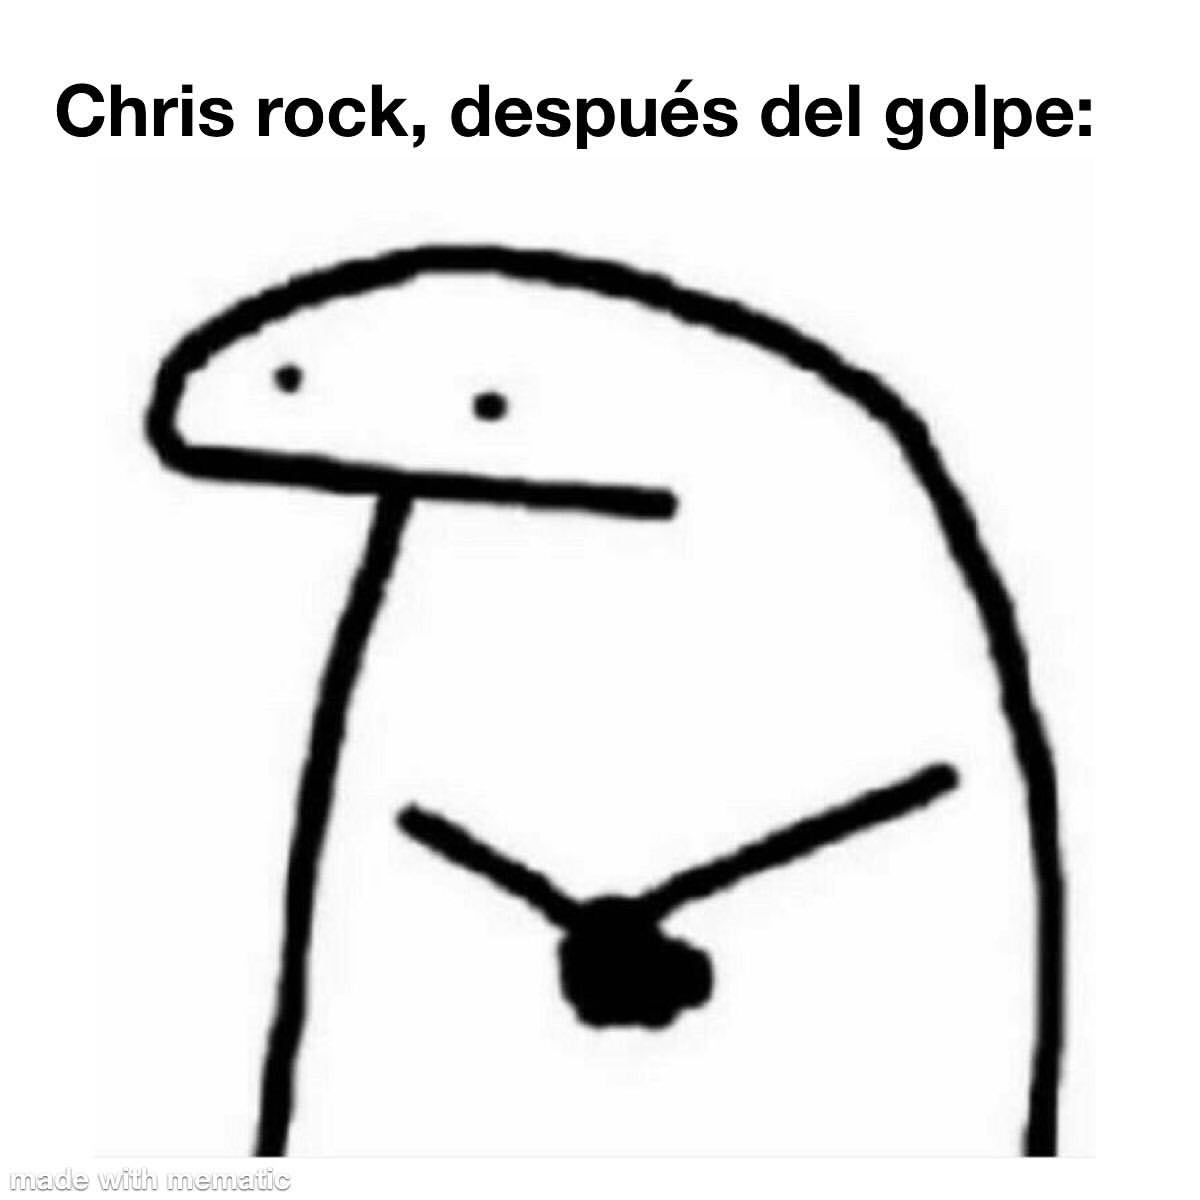 Chris rock, después del golpe: